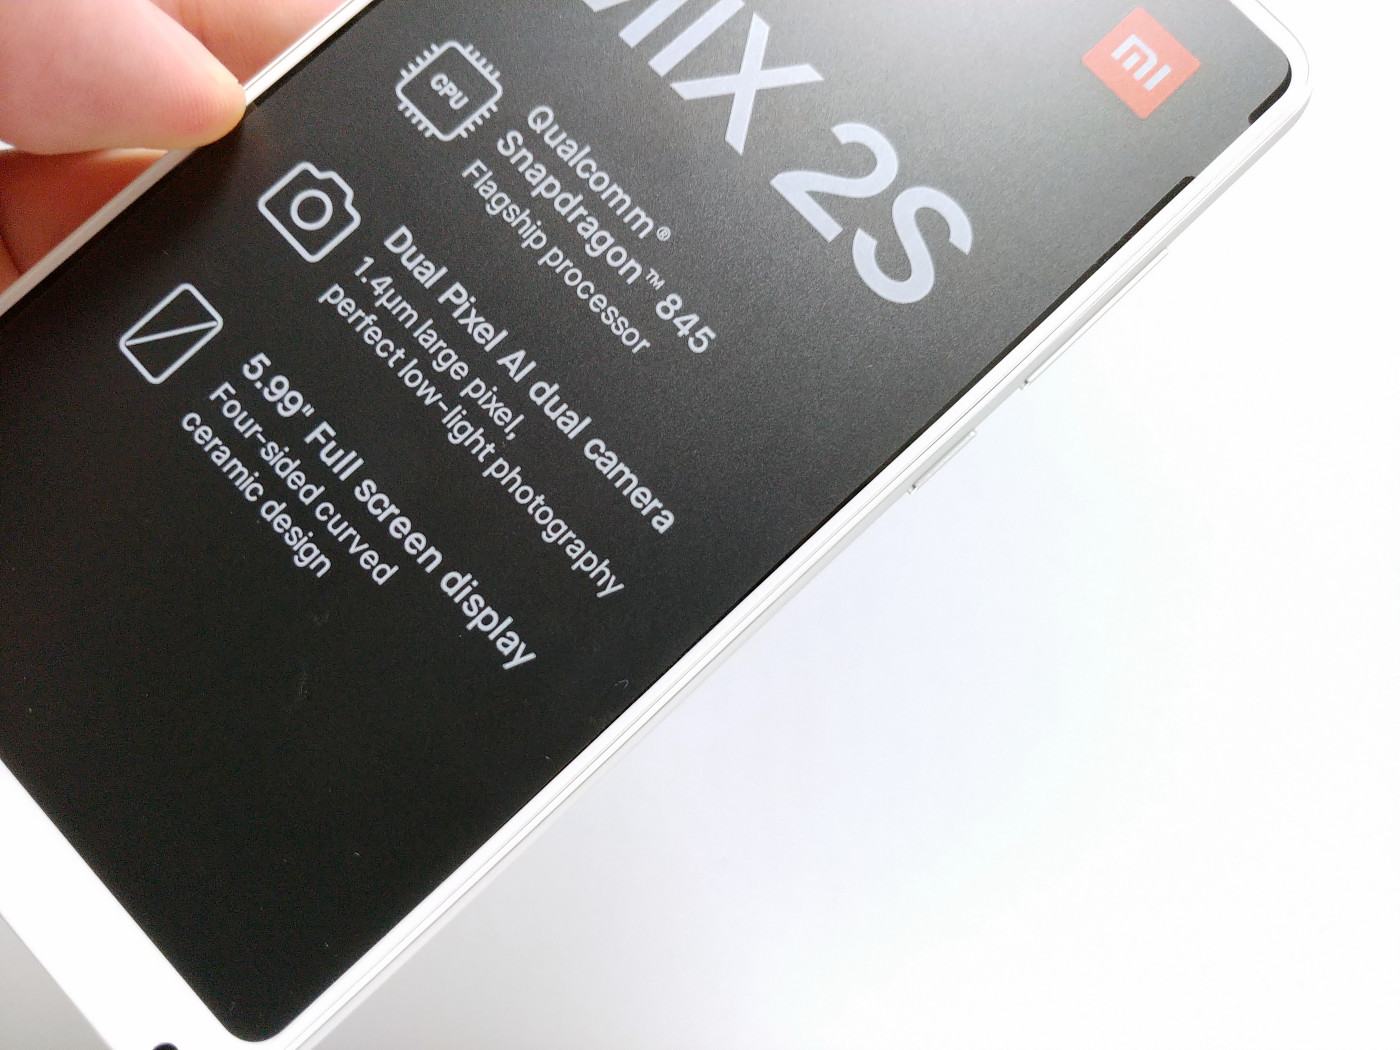 限定クーポン 今一番お買い得な Xiaomi Mi Mix 2s レビュー Iphone Xを徹底的にコケにしたハイエンド格安スマホ Buzzap